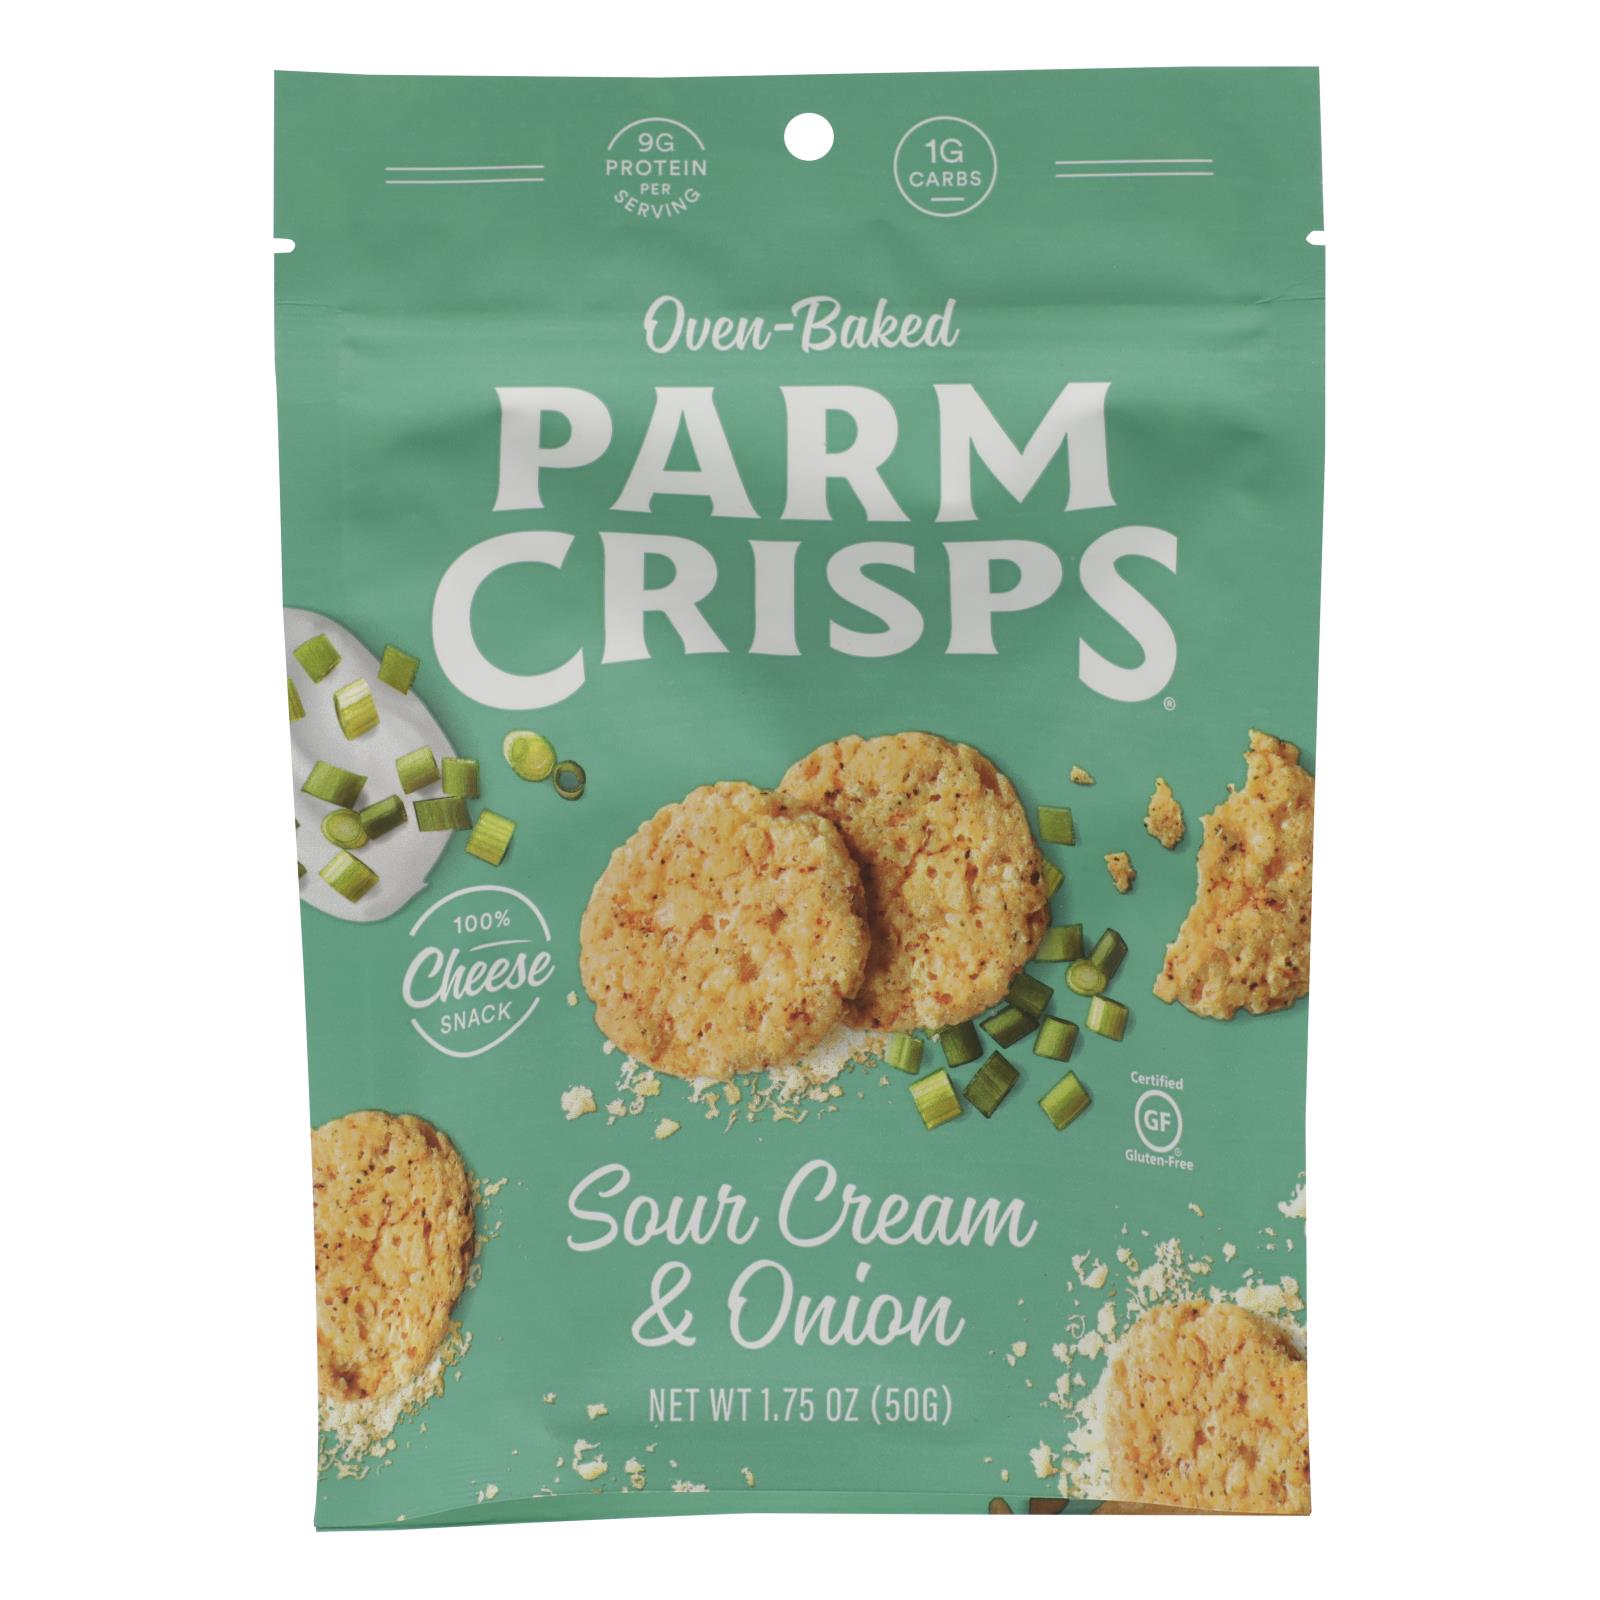 Parm Crisps - Parm Crisp Sr Cream & Onion - 12개 묶음상품 - 1.75 OZ